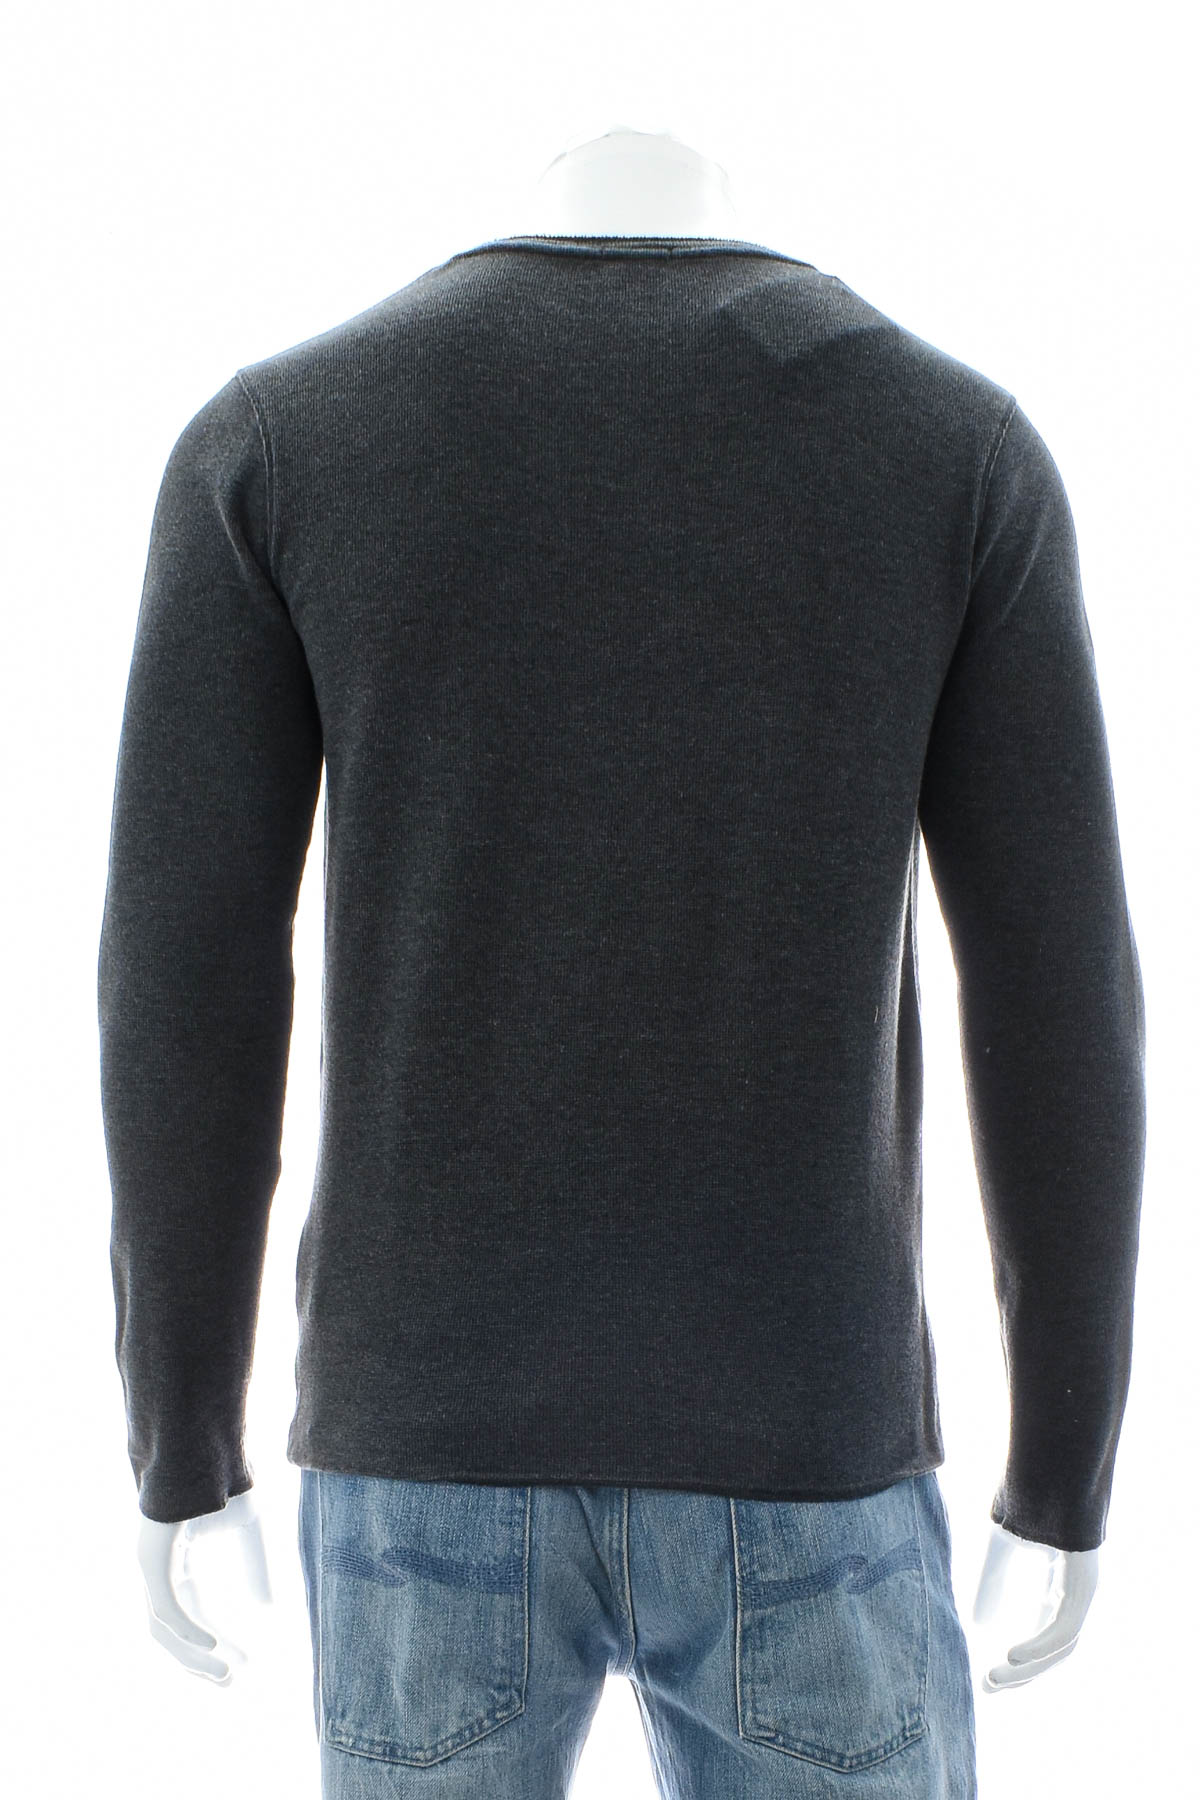 Men's sweater - HUGO BOSS - 1